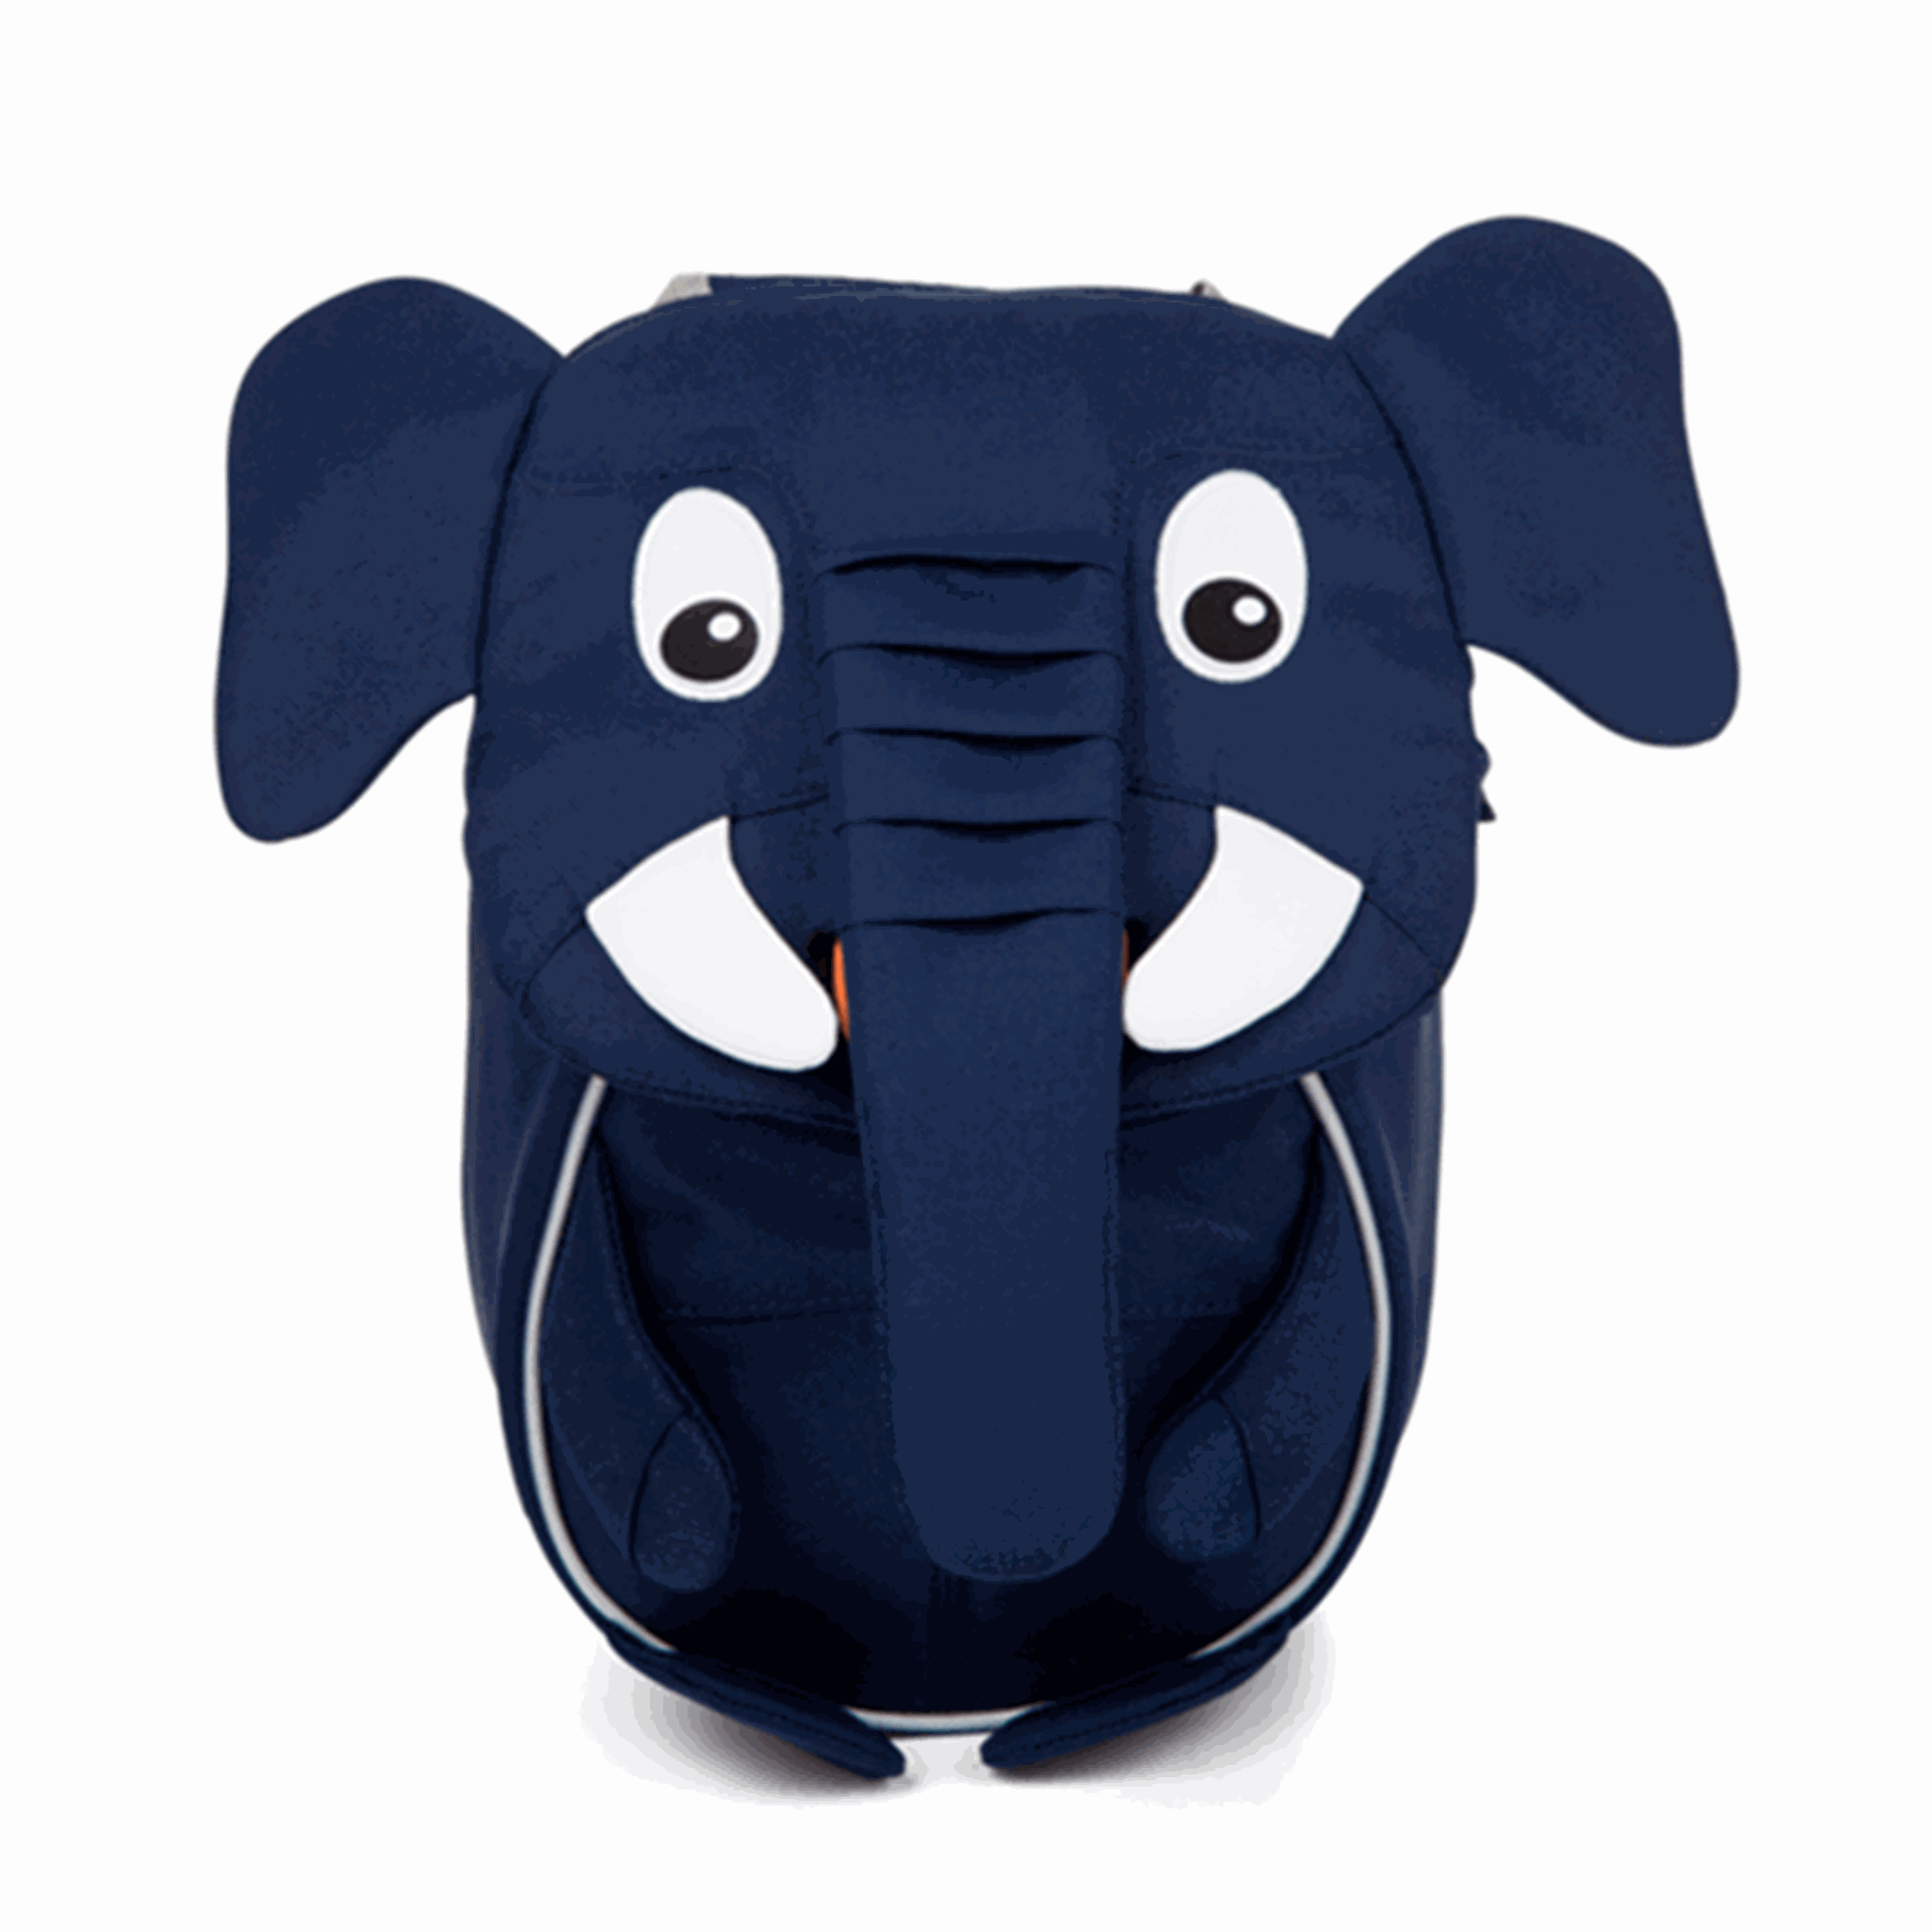 Affenzahn Nursery Bag Little Friend Elephant